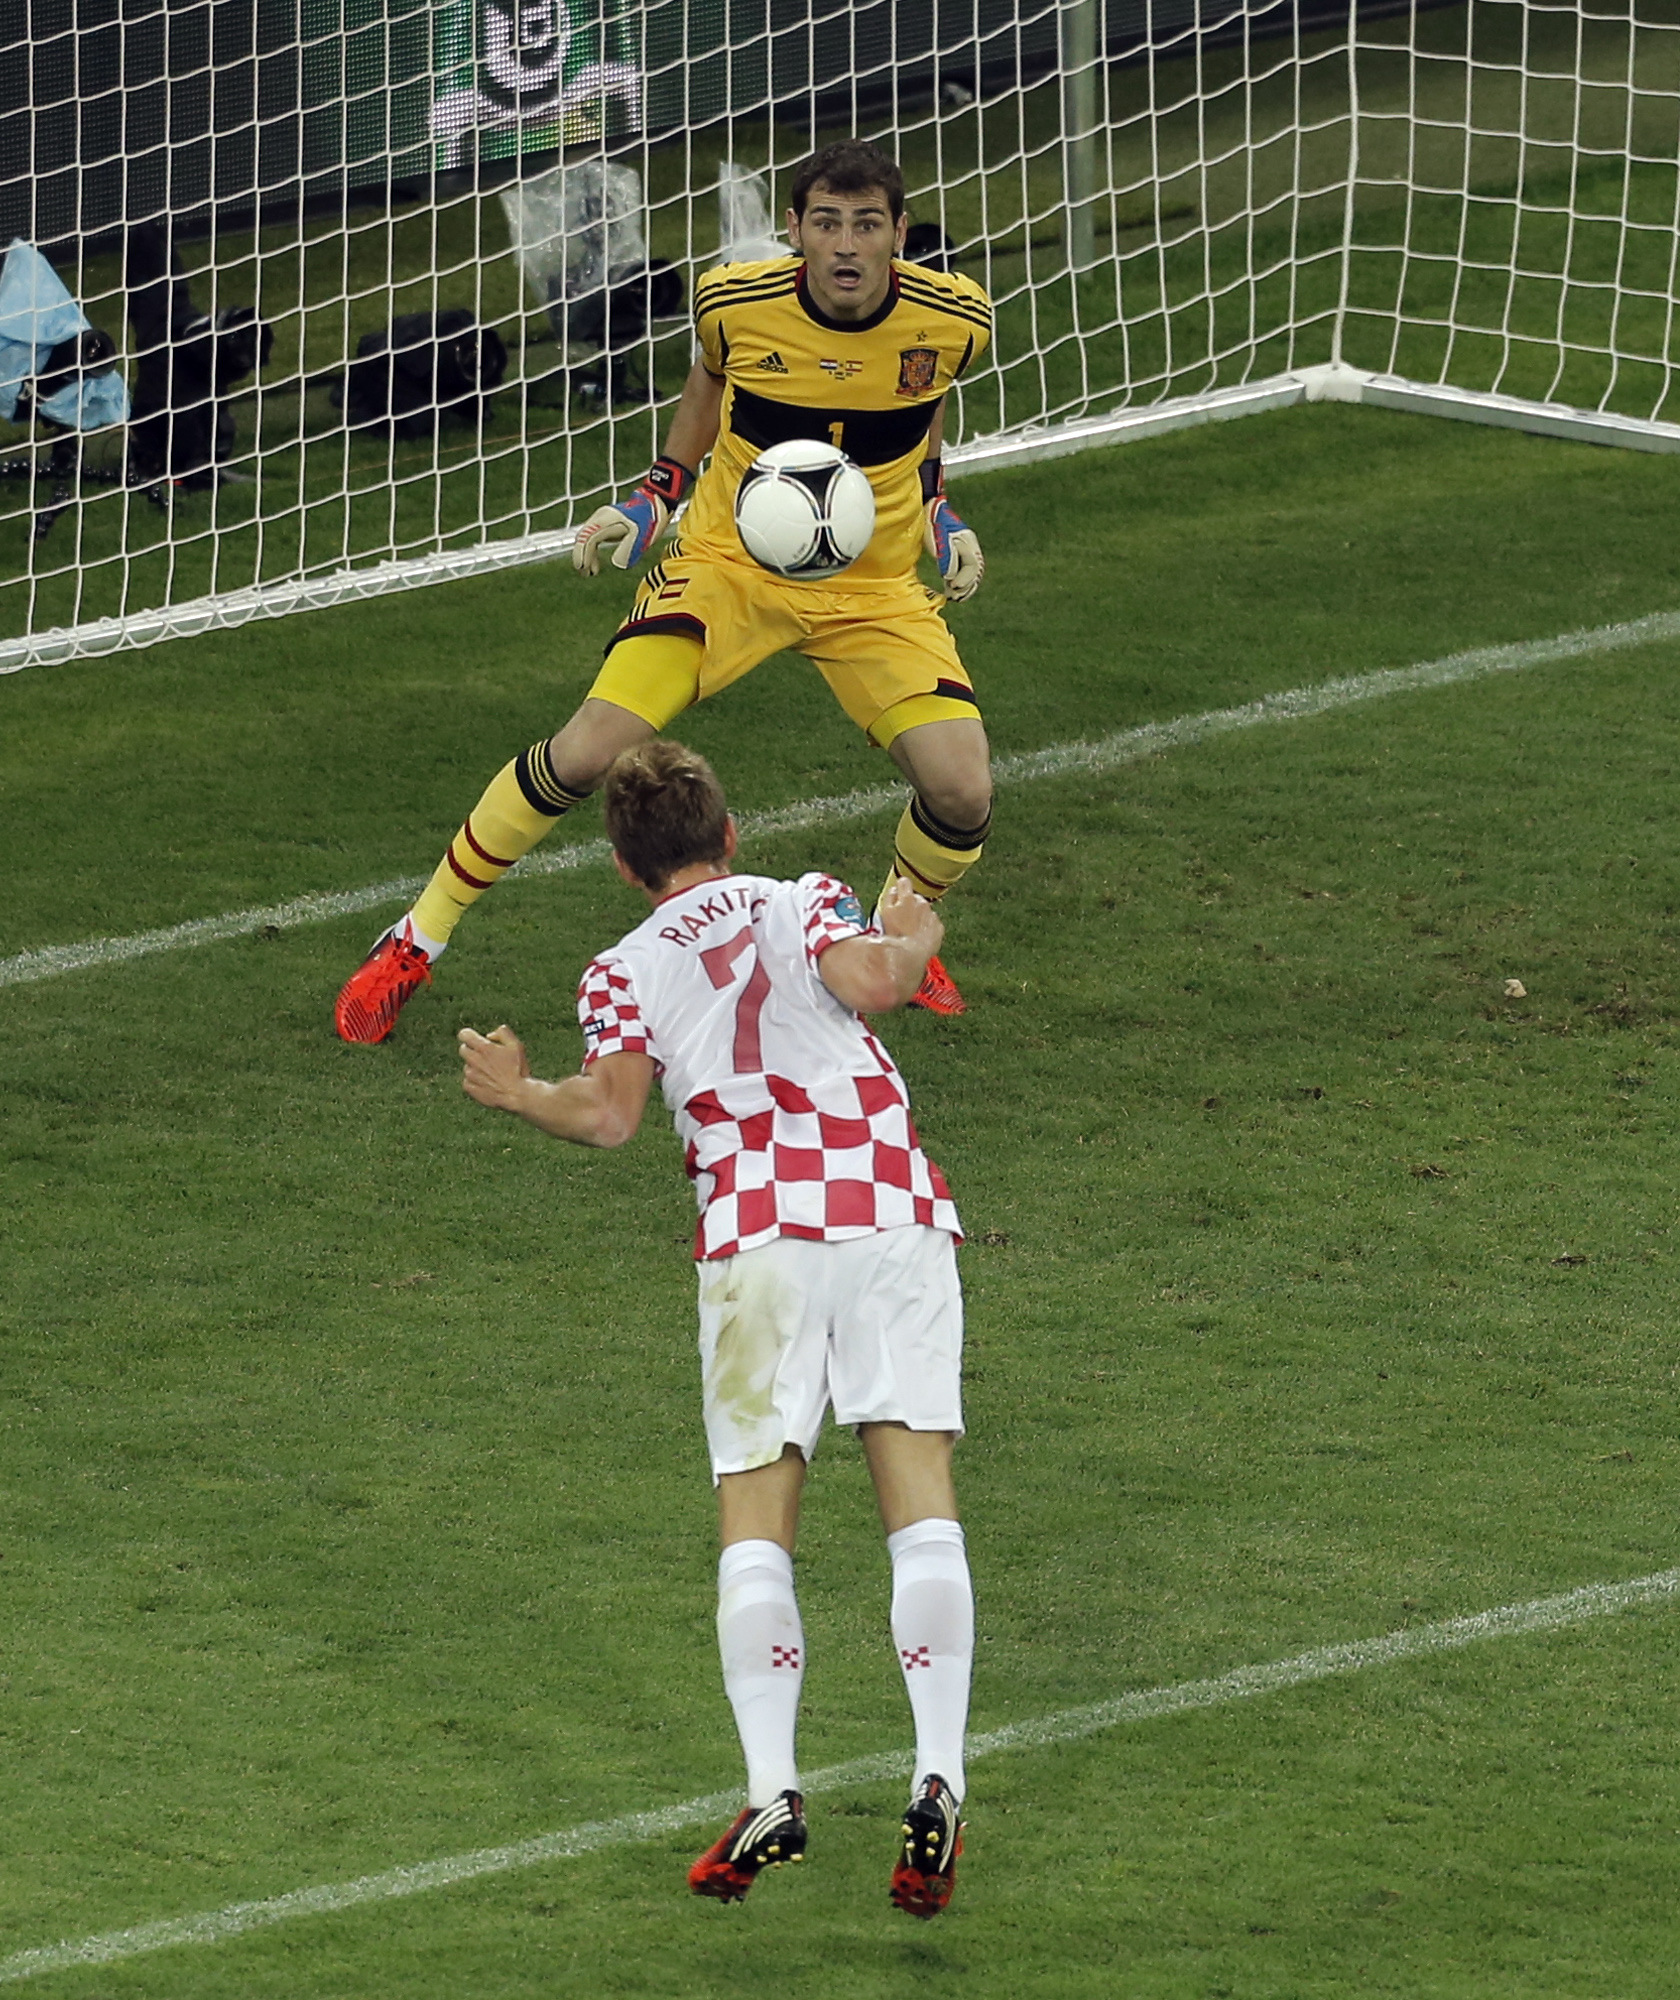 Ivan Rakitic hade Kroatiens bästa chans. Men Iker Casillas stod rätt och tog nicken.